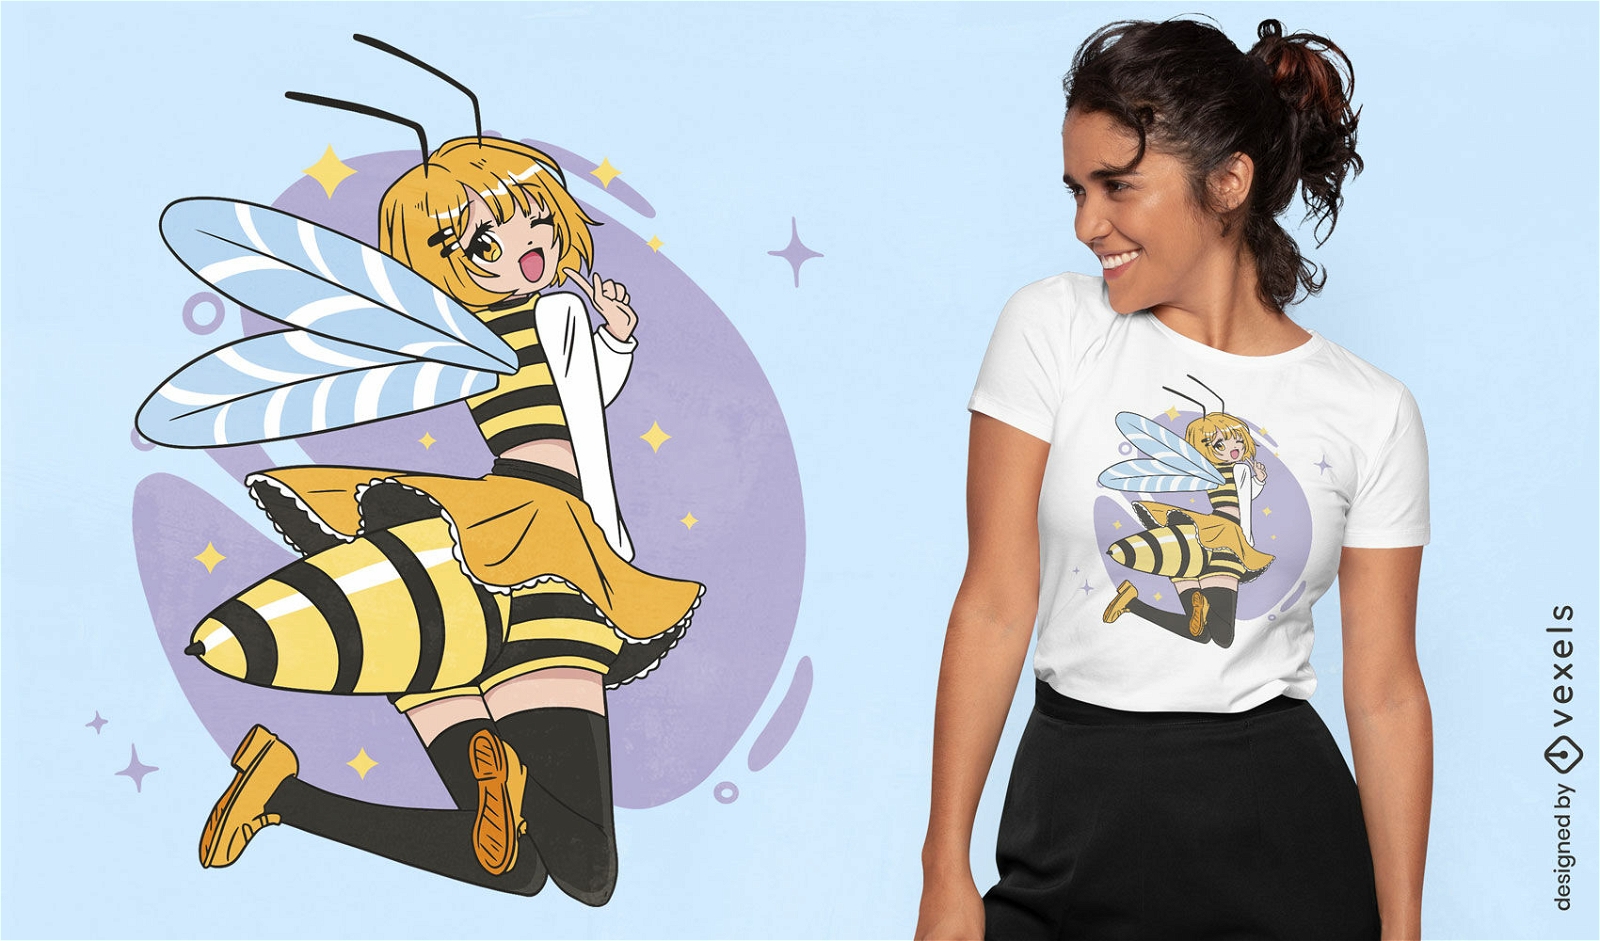 Dise?o de camiseta de chica anime de abeja.